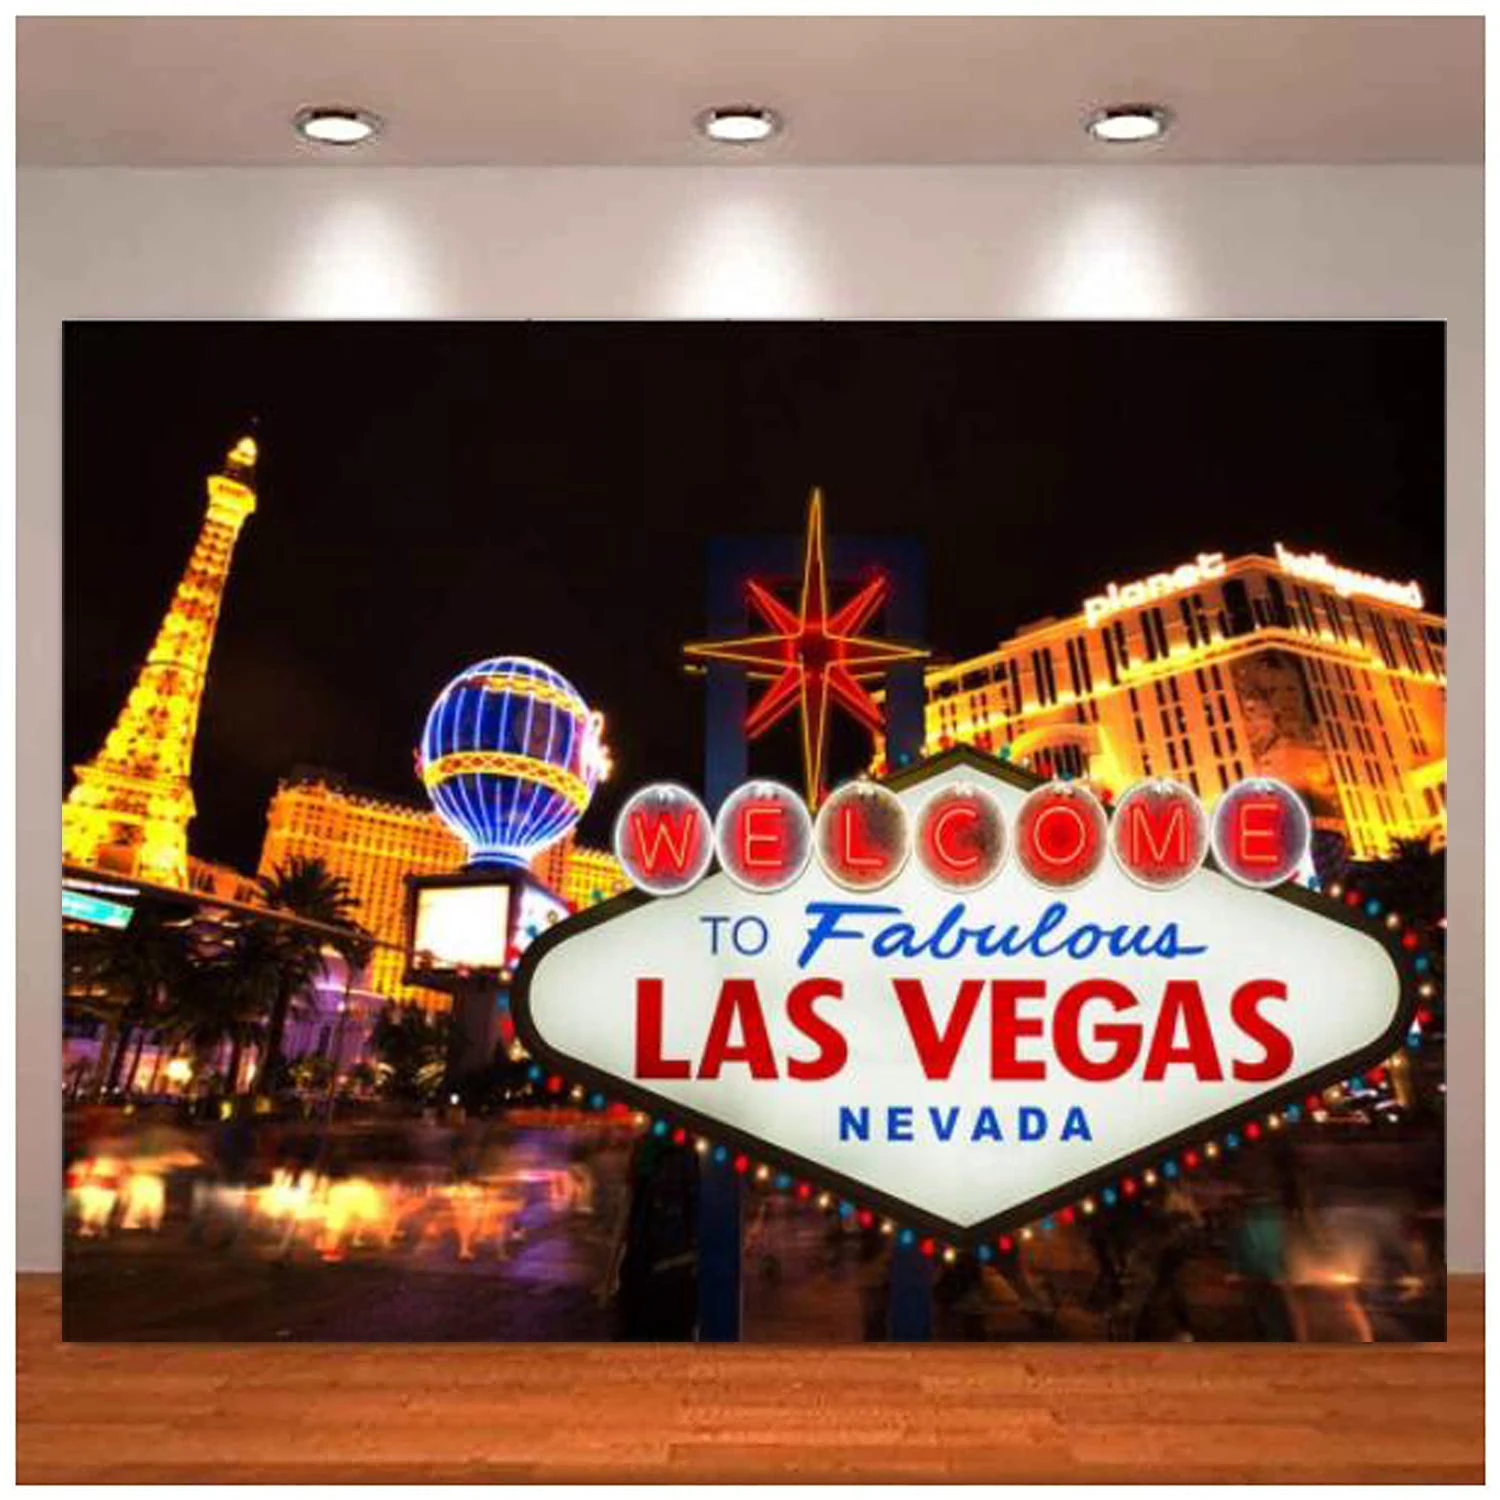 

Добро пожаловать в Лас Вегас фотография Фон городской рекламный щит баннер казино Ночной пейзаж украшение для вечеринки фото фон реквизит